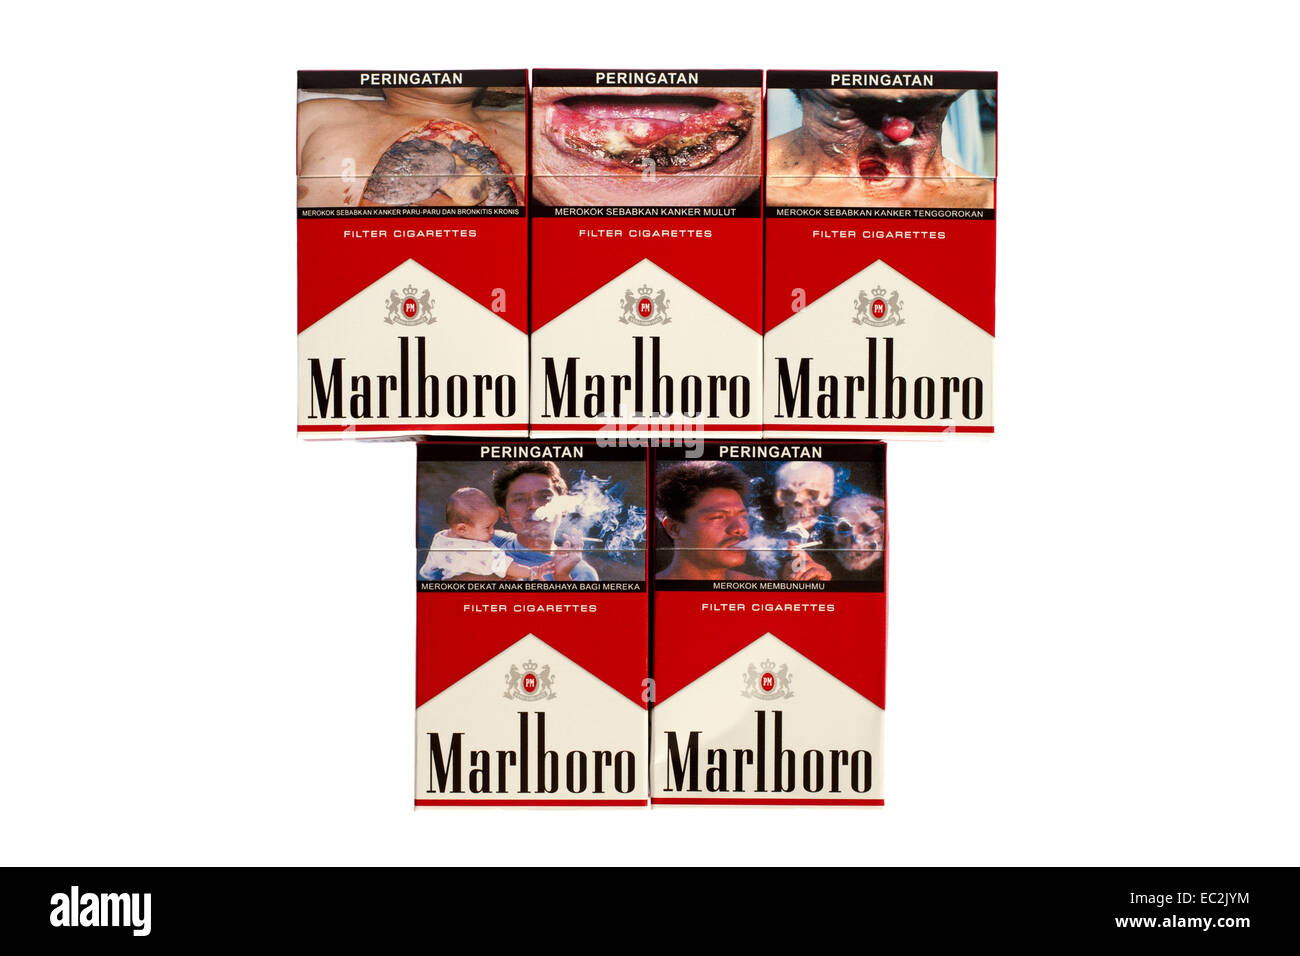 Avertissement graphique photo sur un des paquets de cigarettes de marlboro indonésien illustrant les dangers du tabagisme Banque D'Images